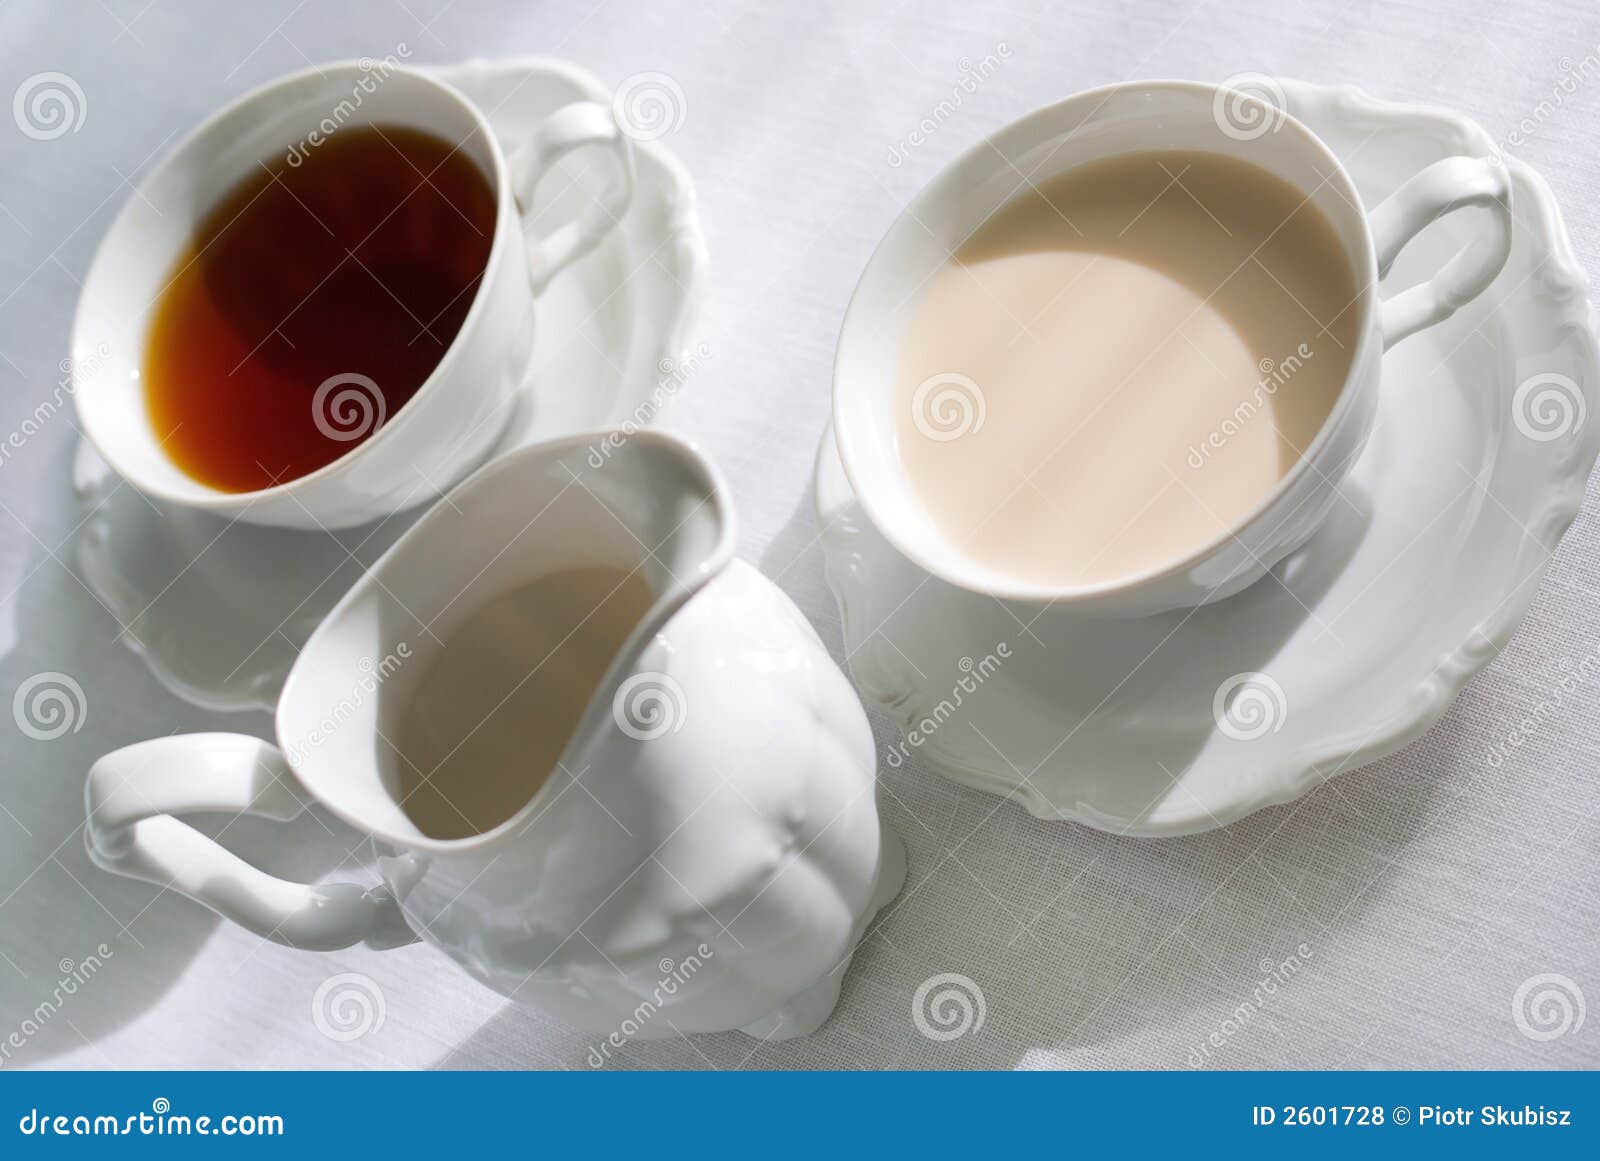 чае с молоком для груди фото 25